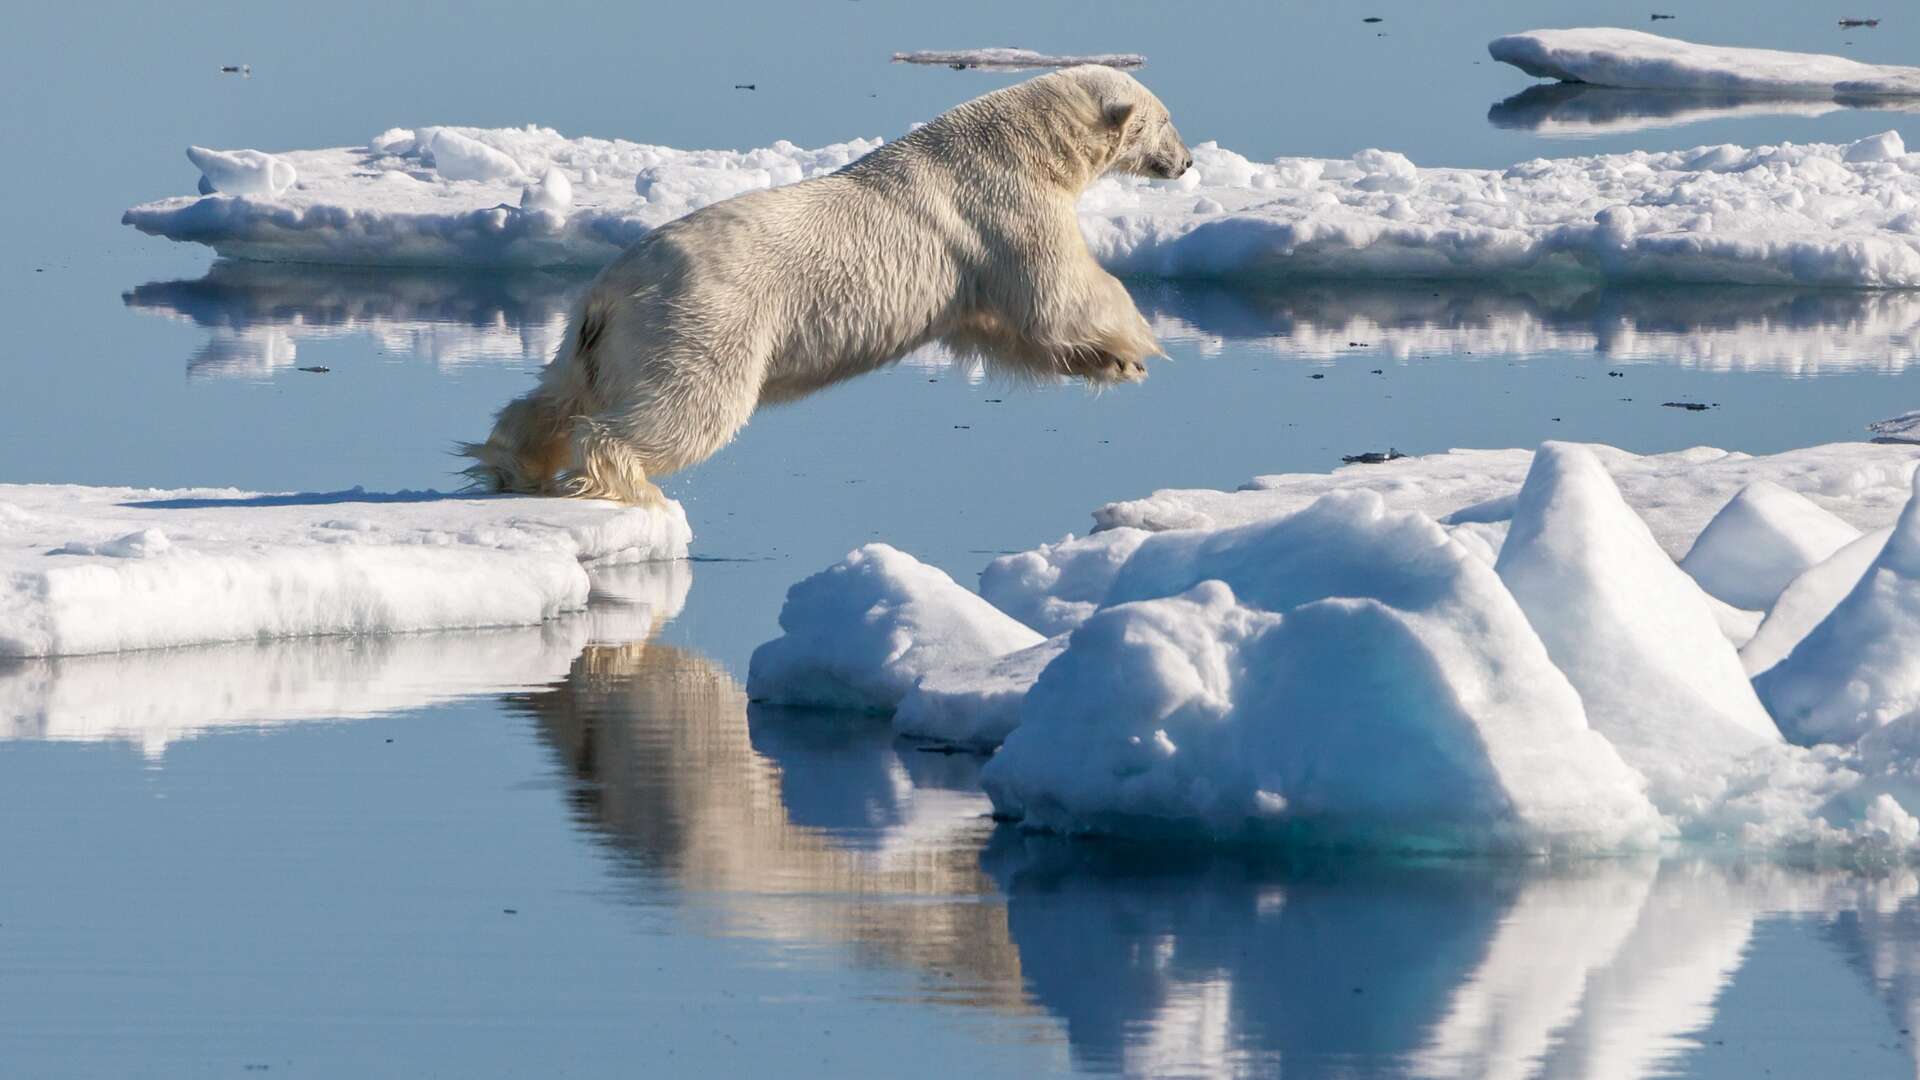 Le CO2 scelle le destin des ours polaires montre une étude